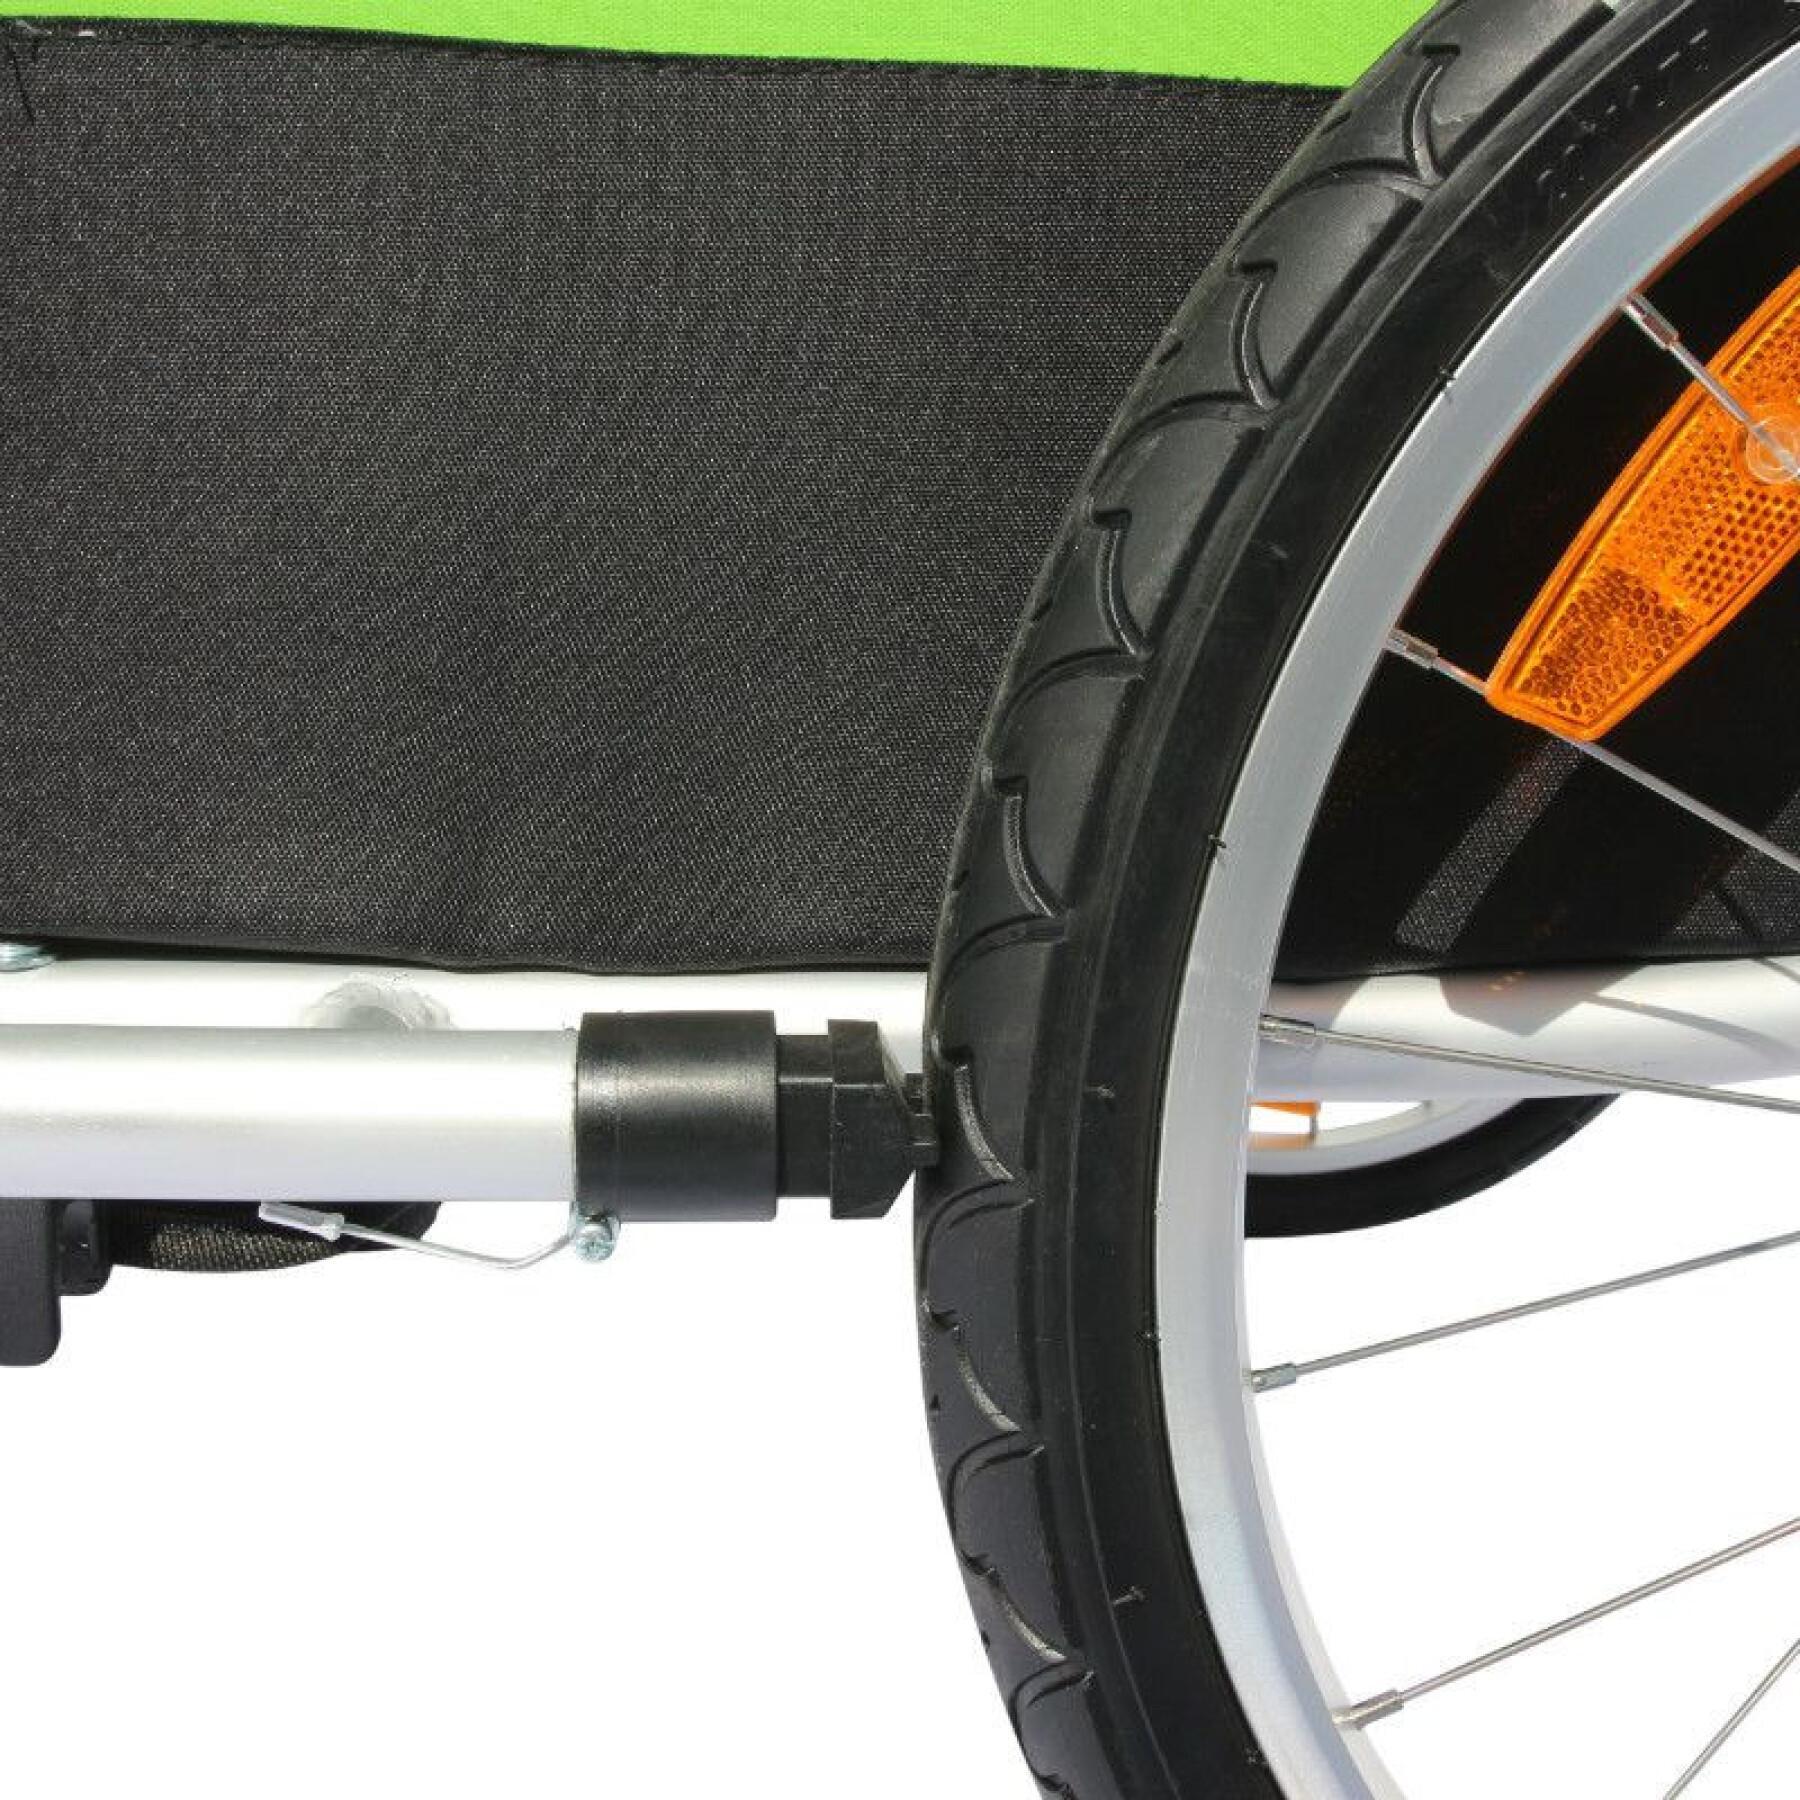 Reboque de bicicleta de 2 lugares coberto em alumínio maxi de cadeira de rodas com fixação do eixo da roda - fornecido com roda dianteira + manípulo do travão - montagem rapide sem ferramentas P2R 36 Kg